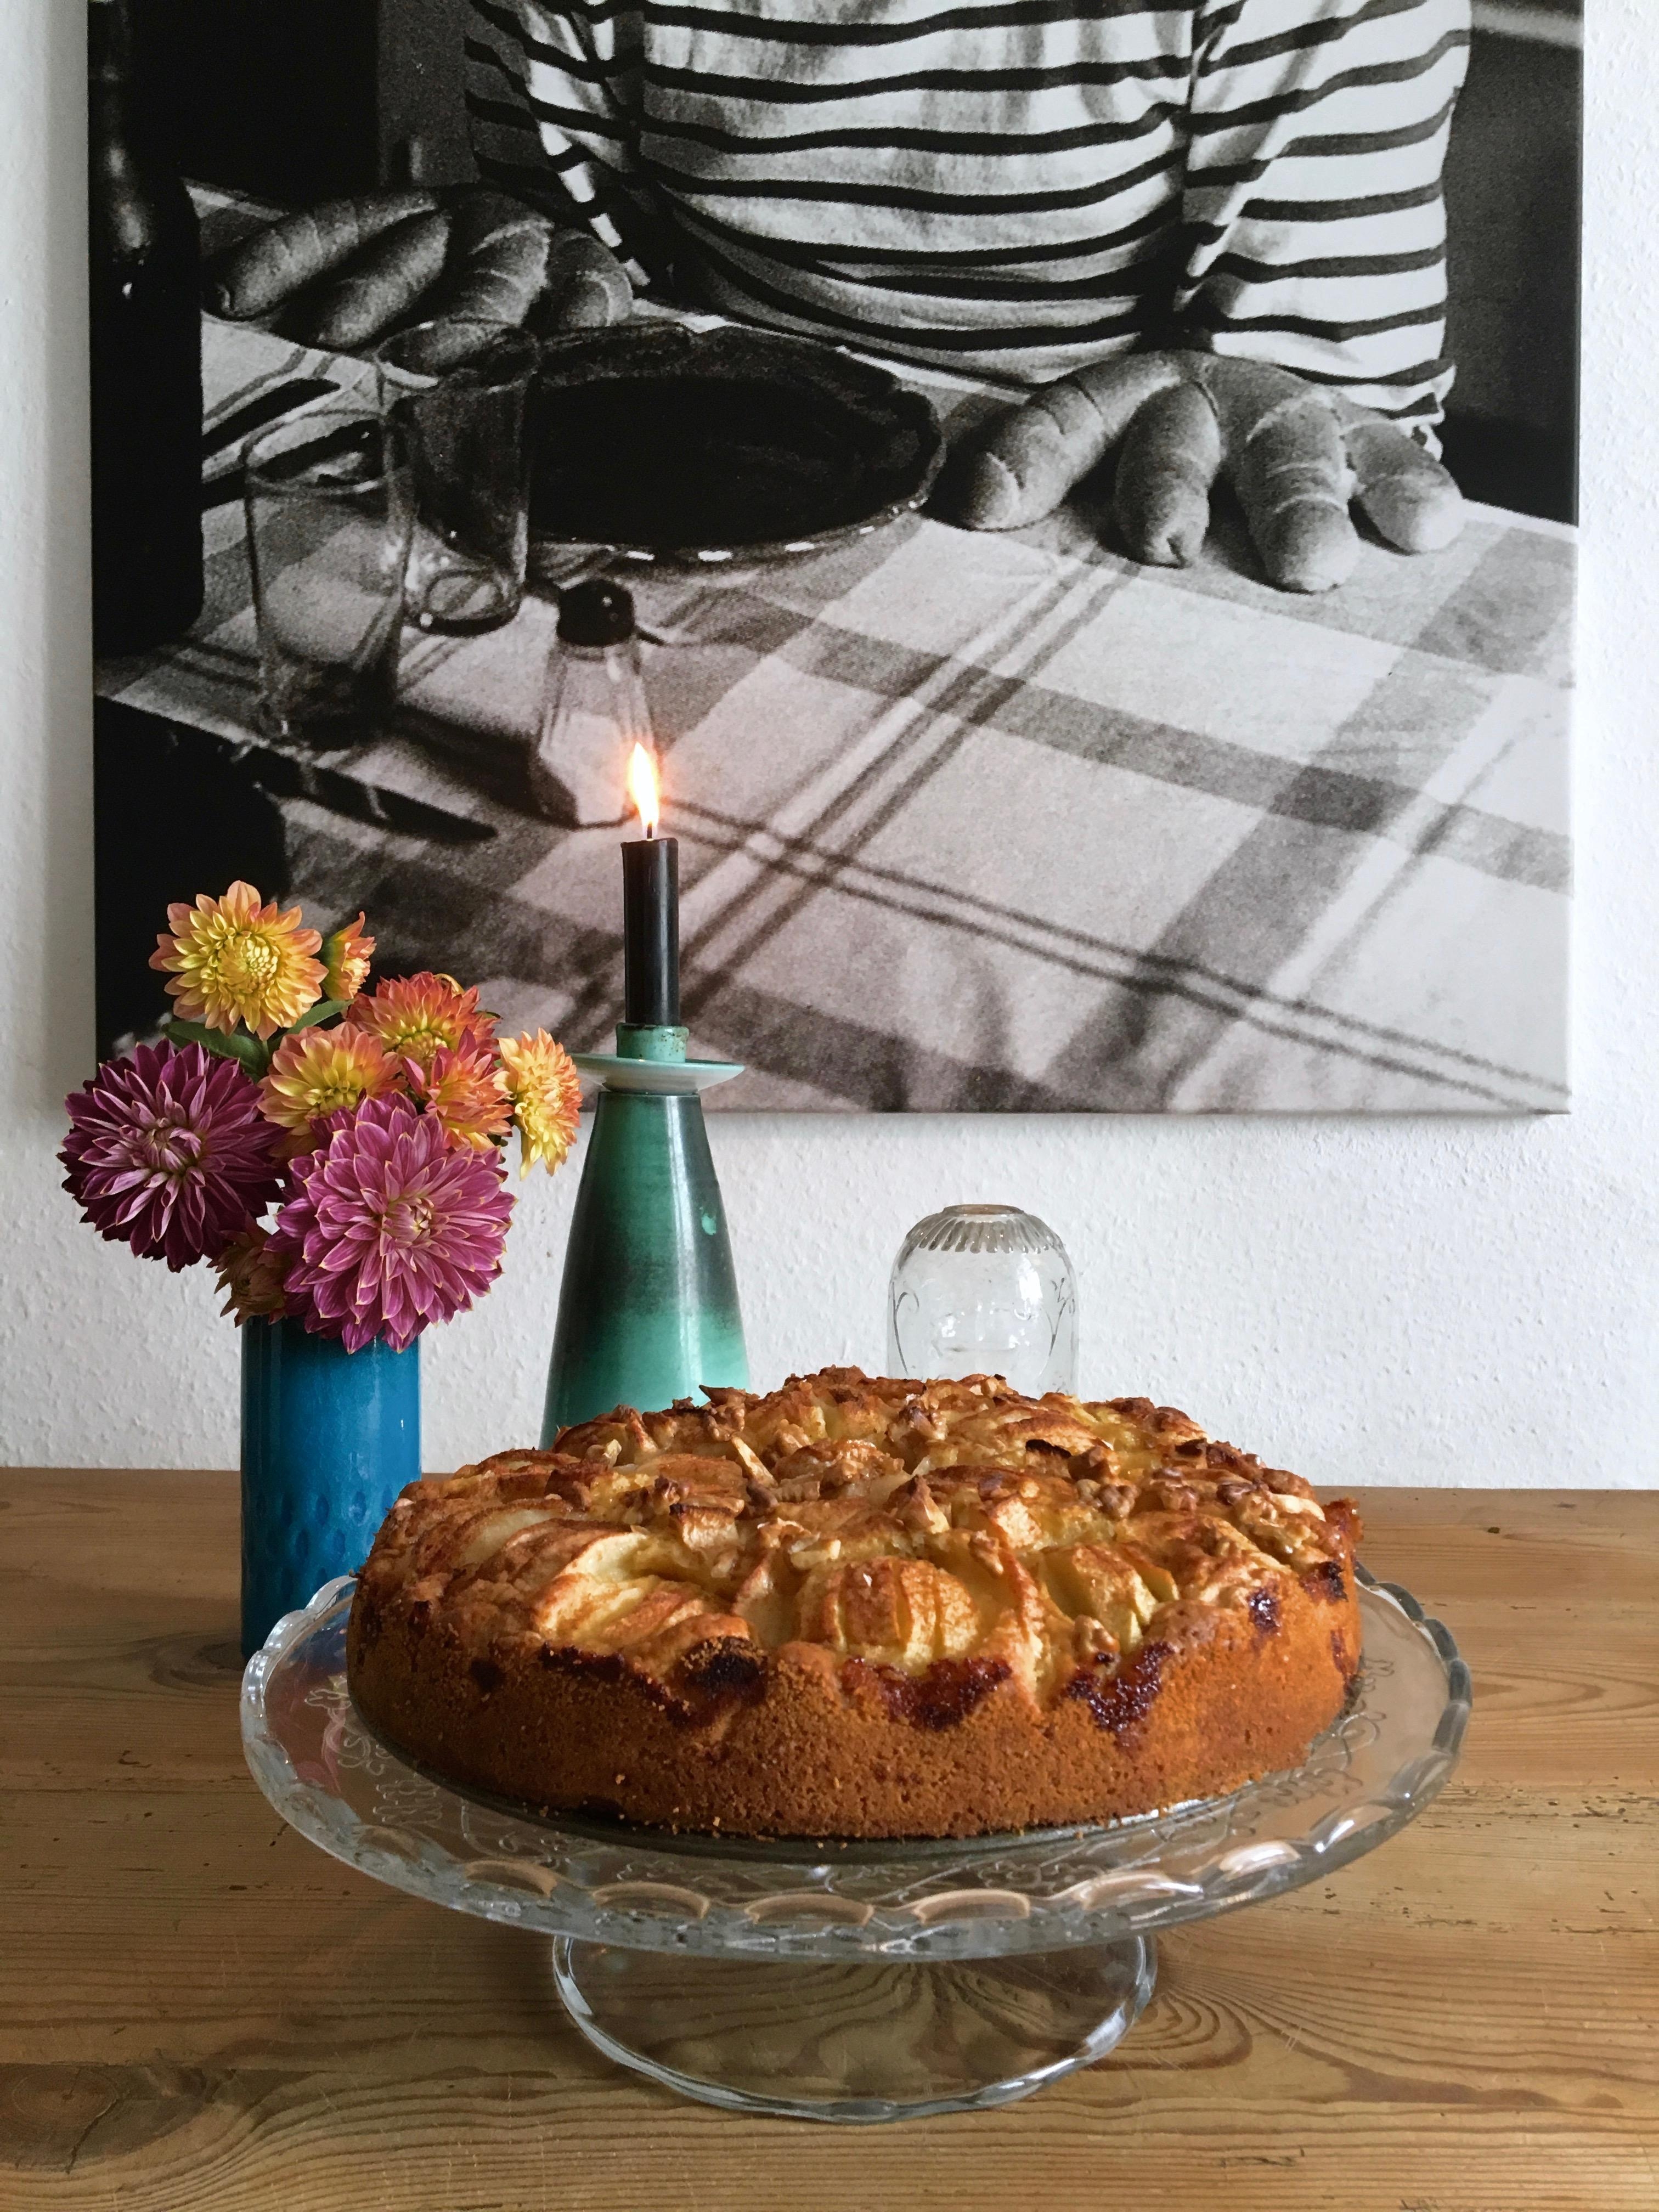 Apfel-Walnuss Kuchen. Virtuell für FrolleinCharlotte & frauhase 💚

#vegan #plantbased #FürLiebeMenschen